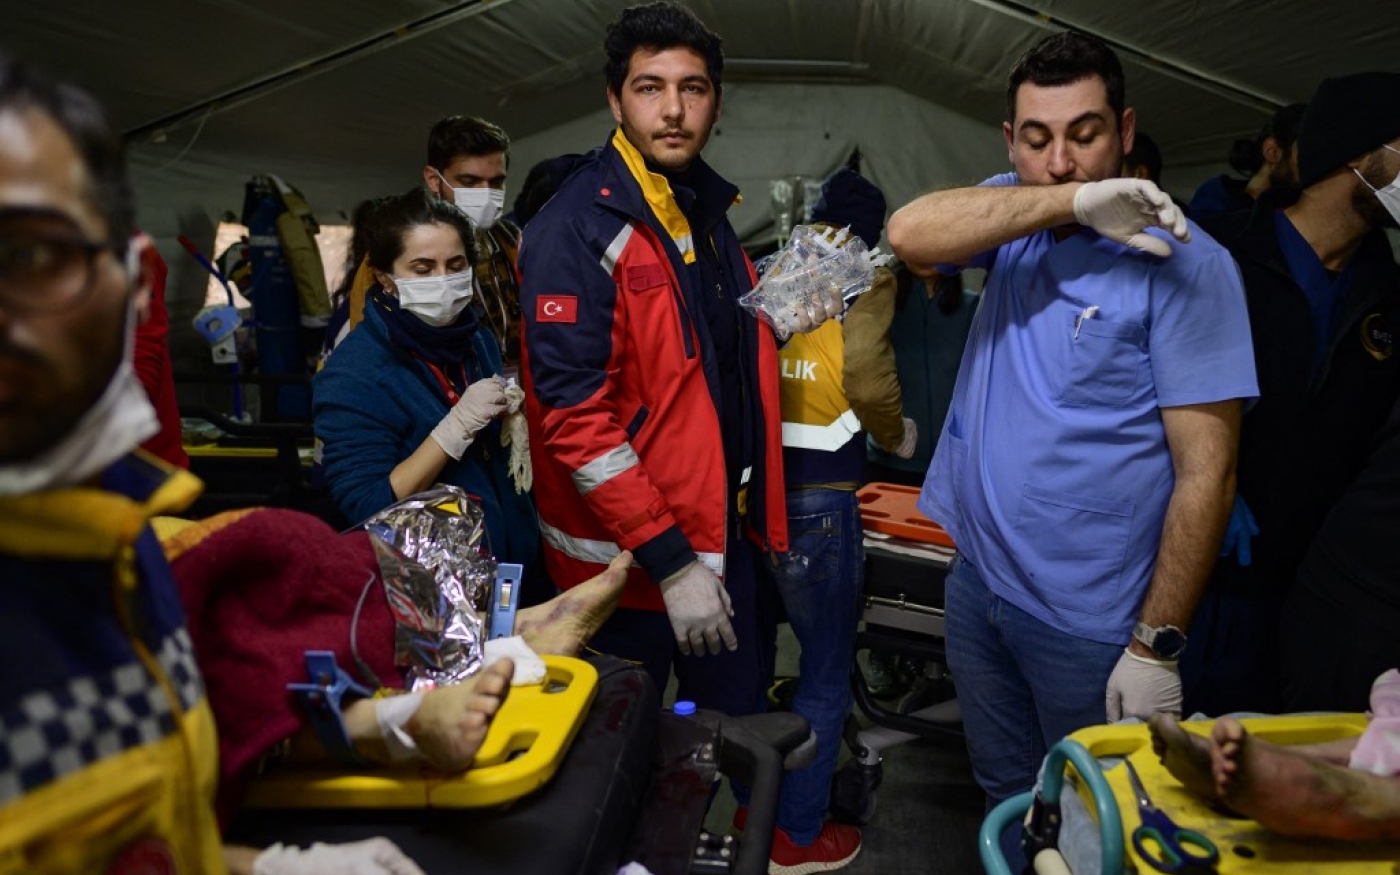 Les sauveteurs soignent les personnes blessées dans le séisme à l’hôpital de campagne de Hatay, le 13 février 2023 (AFP/Yasin Akgul)